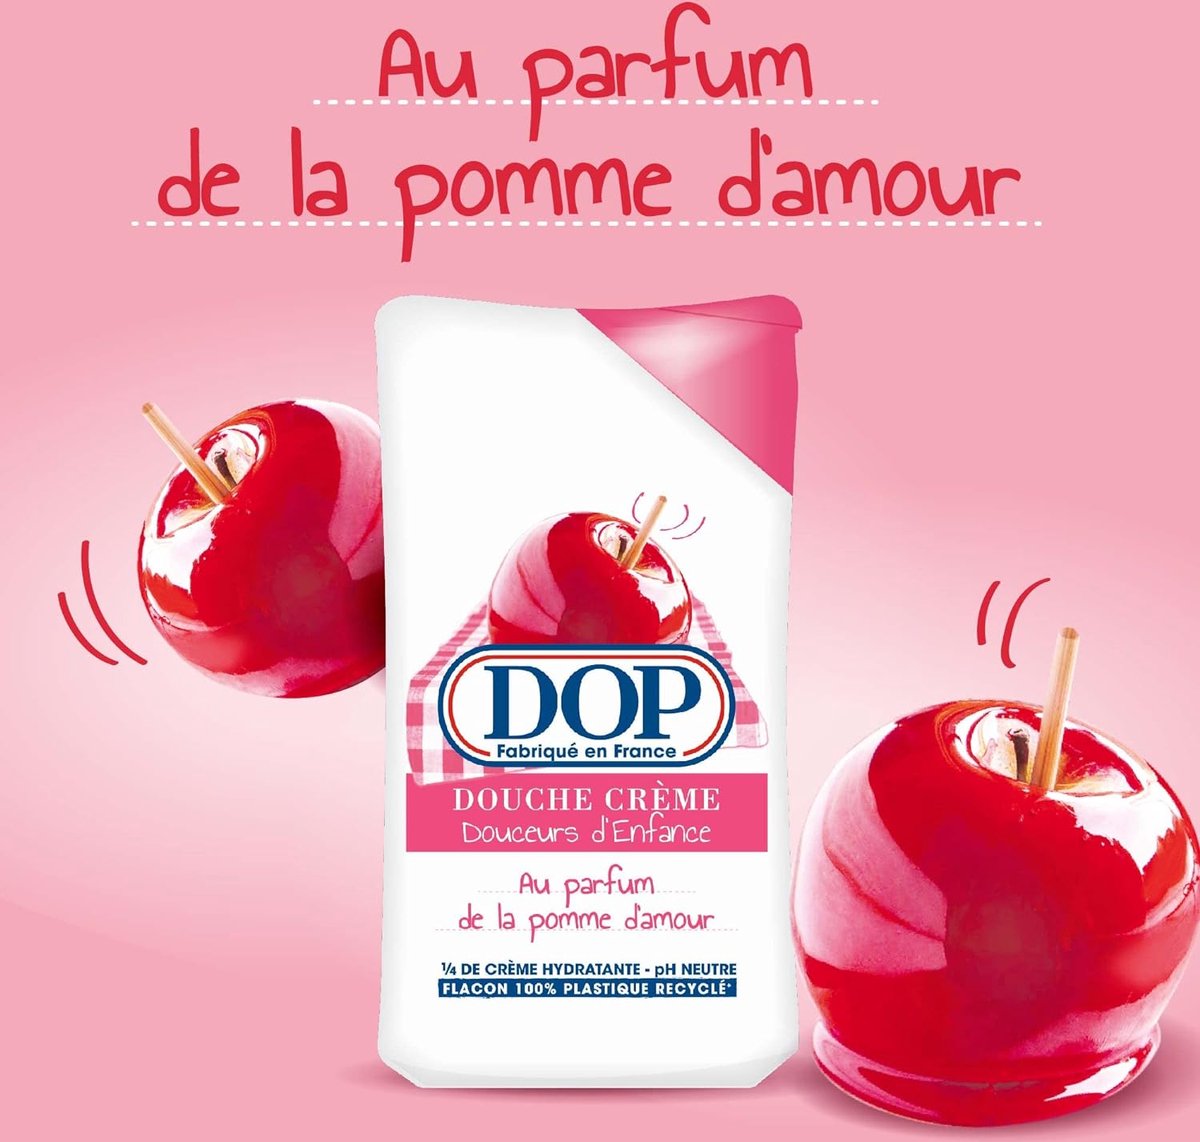 DOP Douceurs d'Enfance Gel douche crème au parfum de la pomme d'amour (2 stuks)